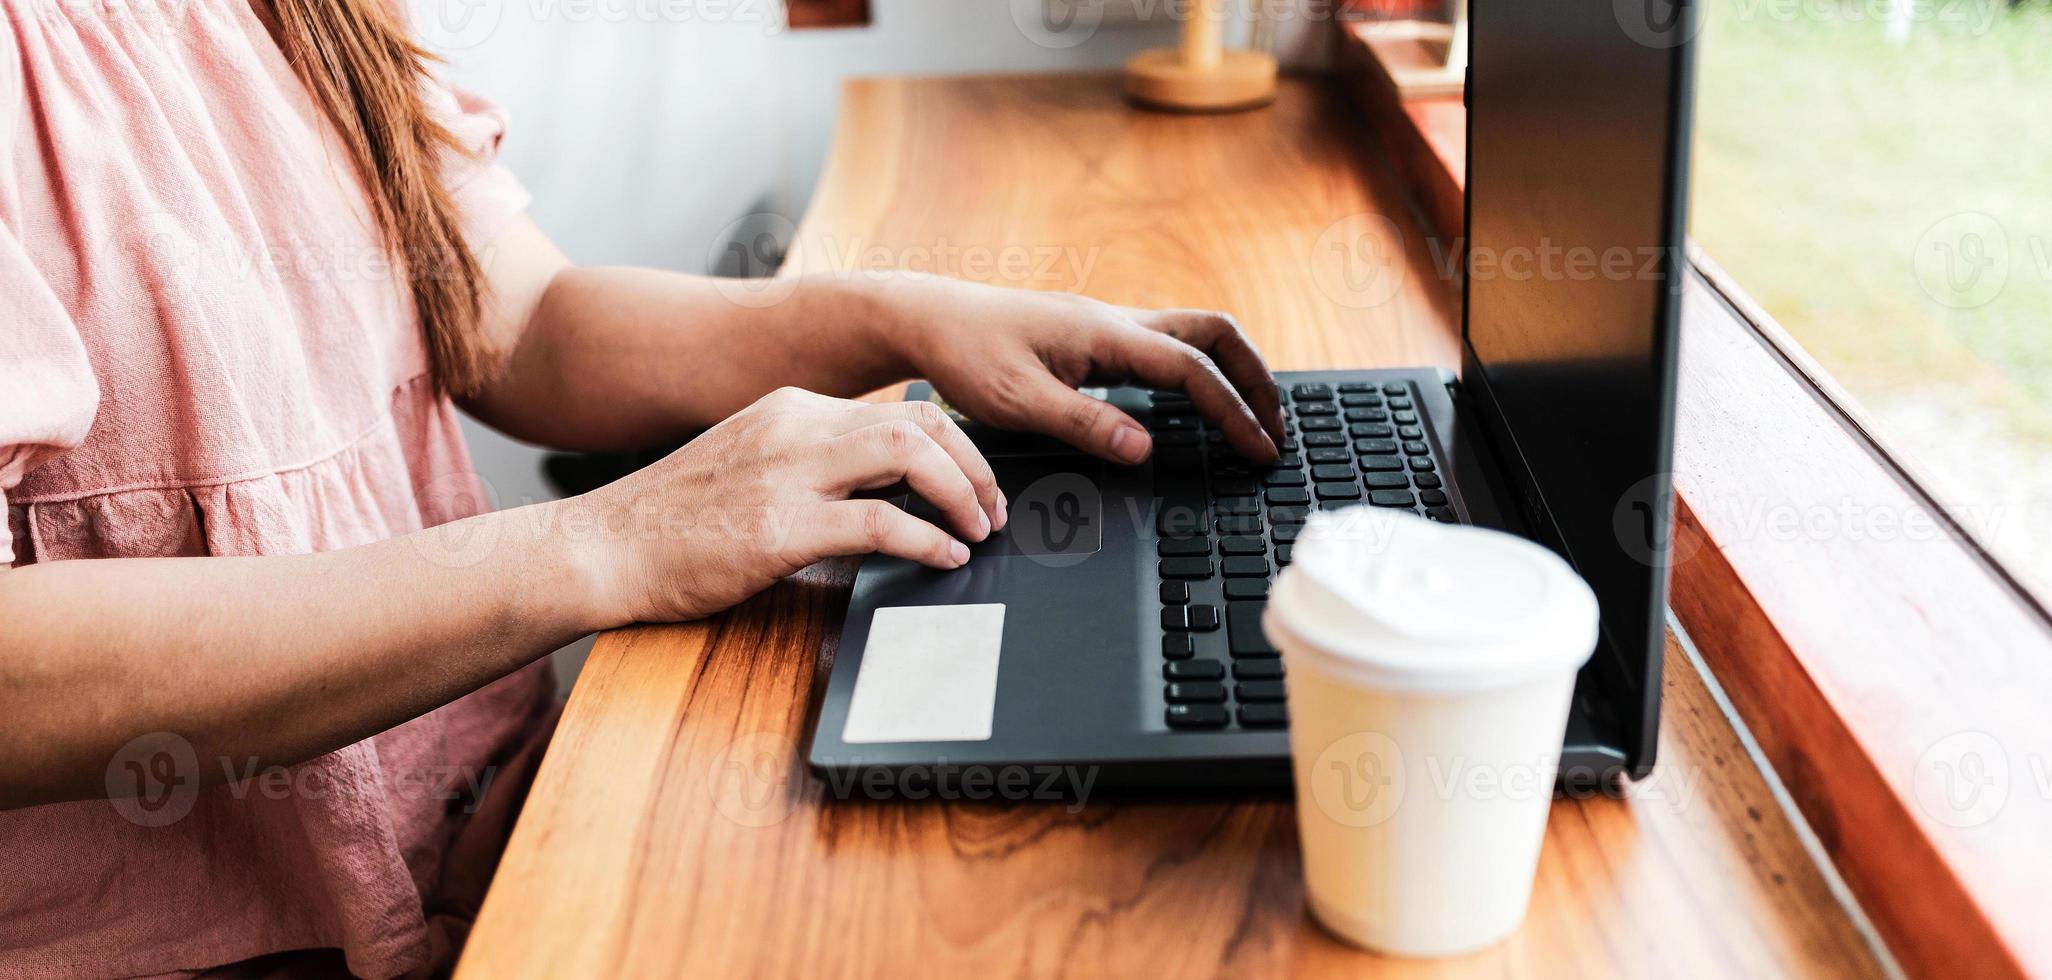 nahaufnahme der hände der frau, die auf einem laptop tippen.geschäftsfrau, die an einem laptop arbeitet, dame, die computerkonzept verwendet, um e-mails zu schreiben, online zu kommunizieren, während sie an einem tisch in einem gemütlichen café sitzt. foto